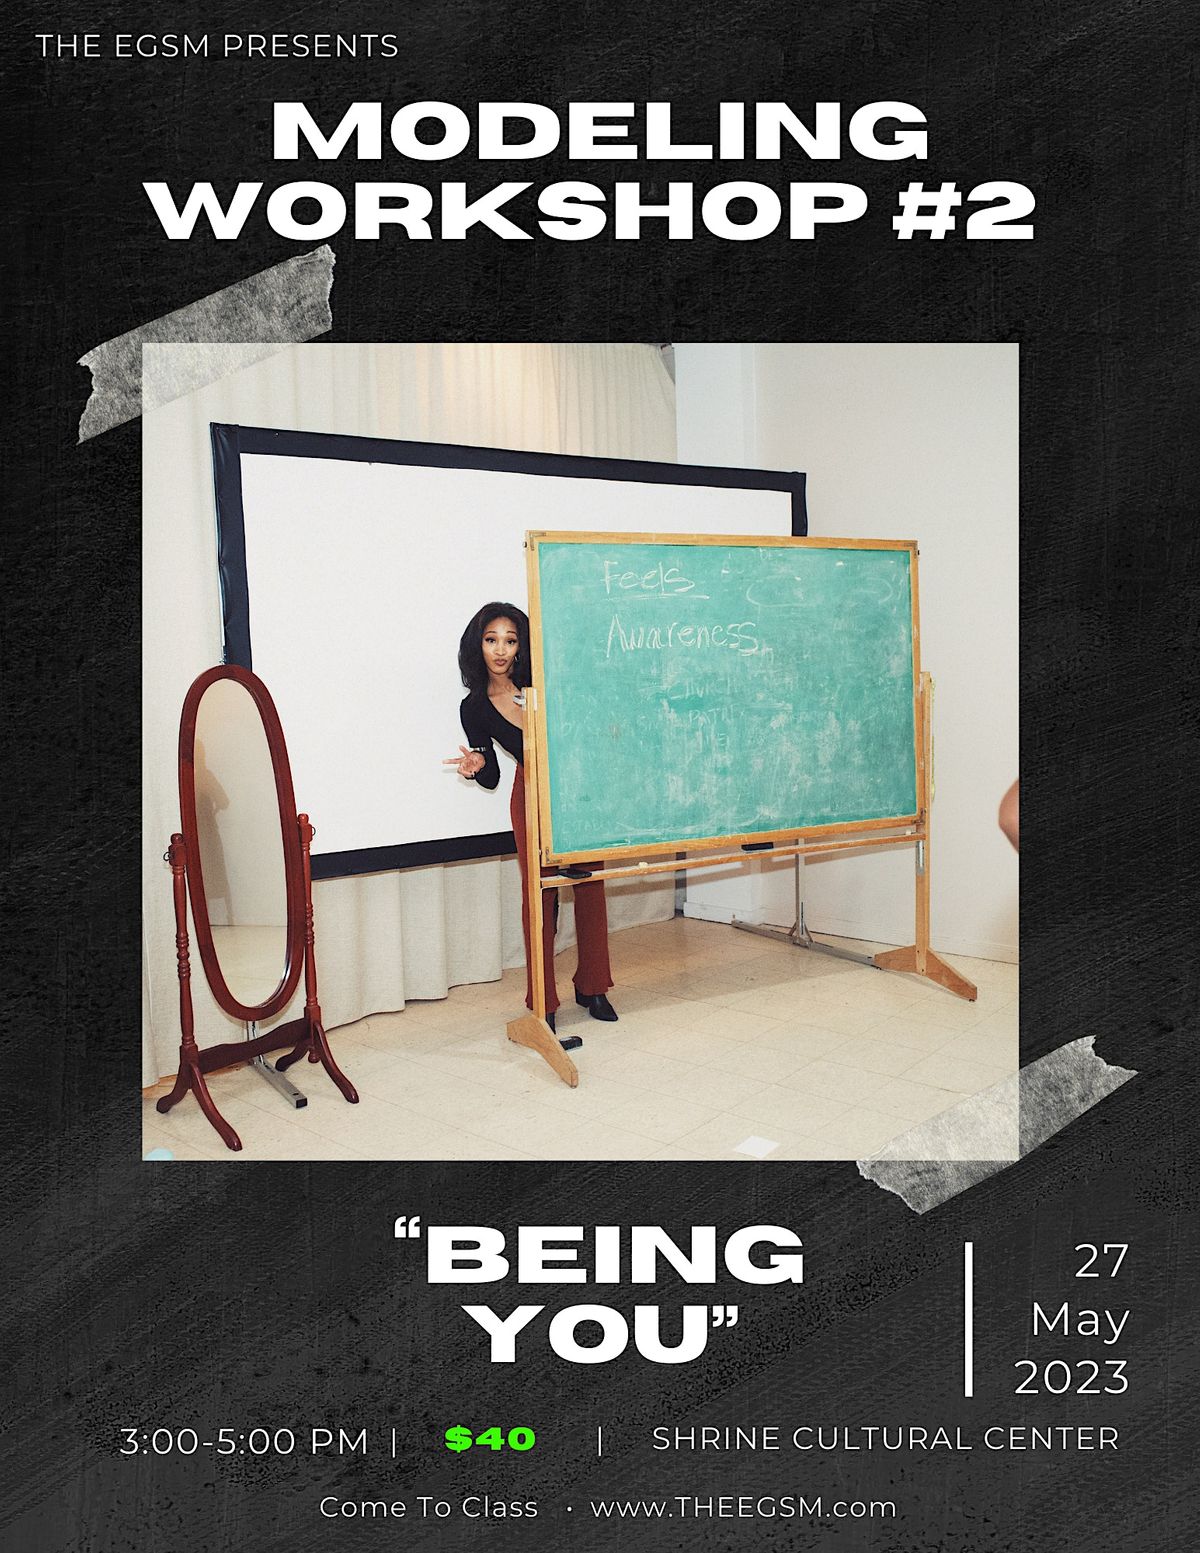 Modeling Workshop #2 BEING YOU!